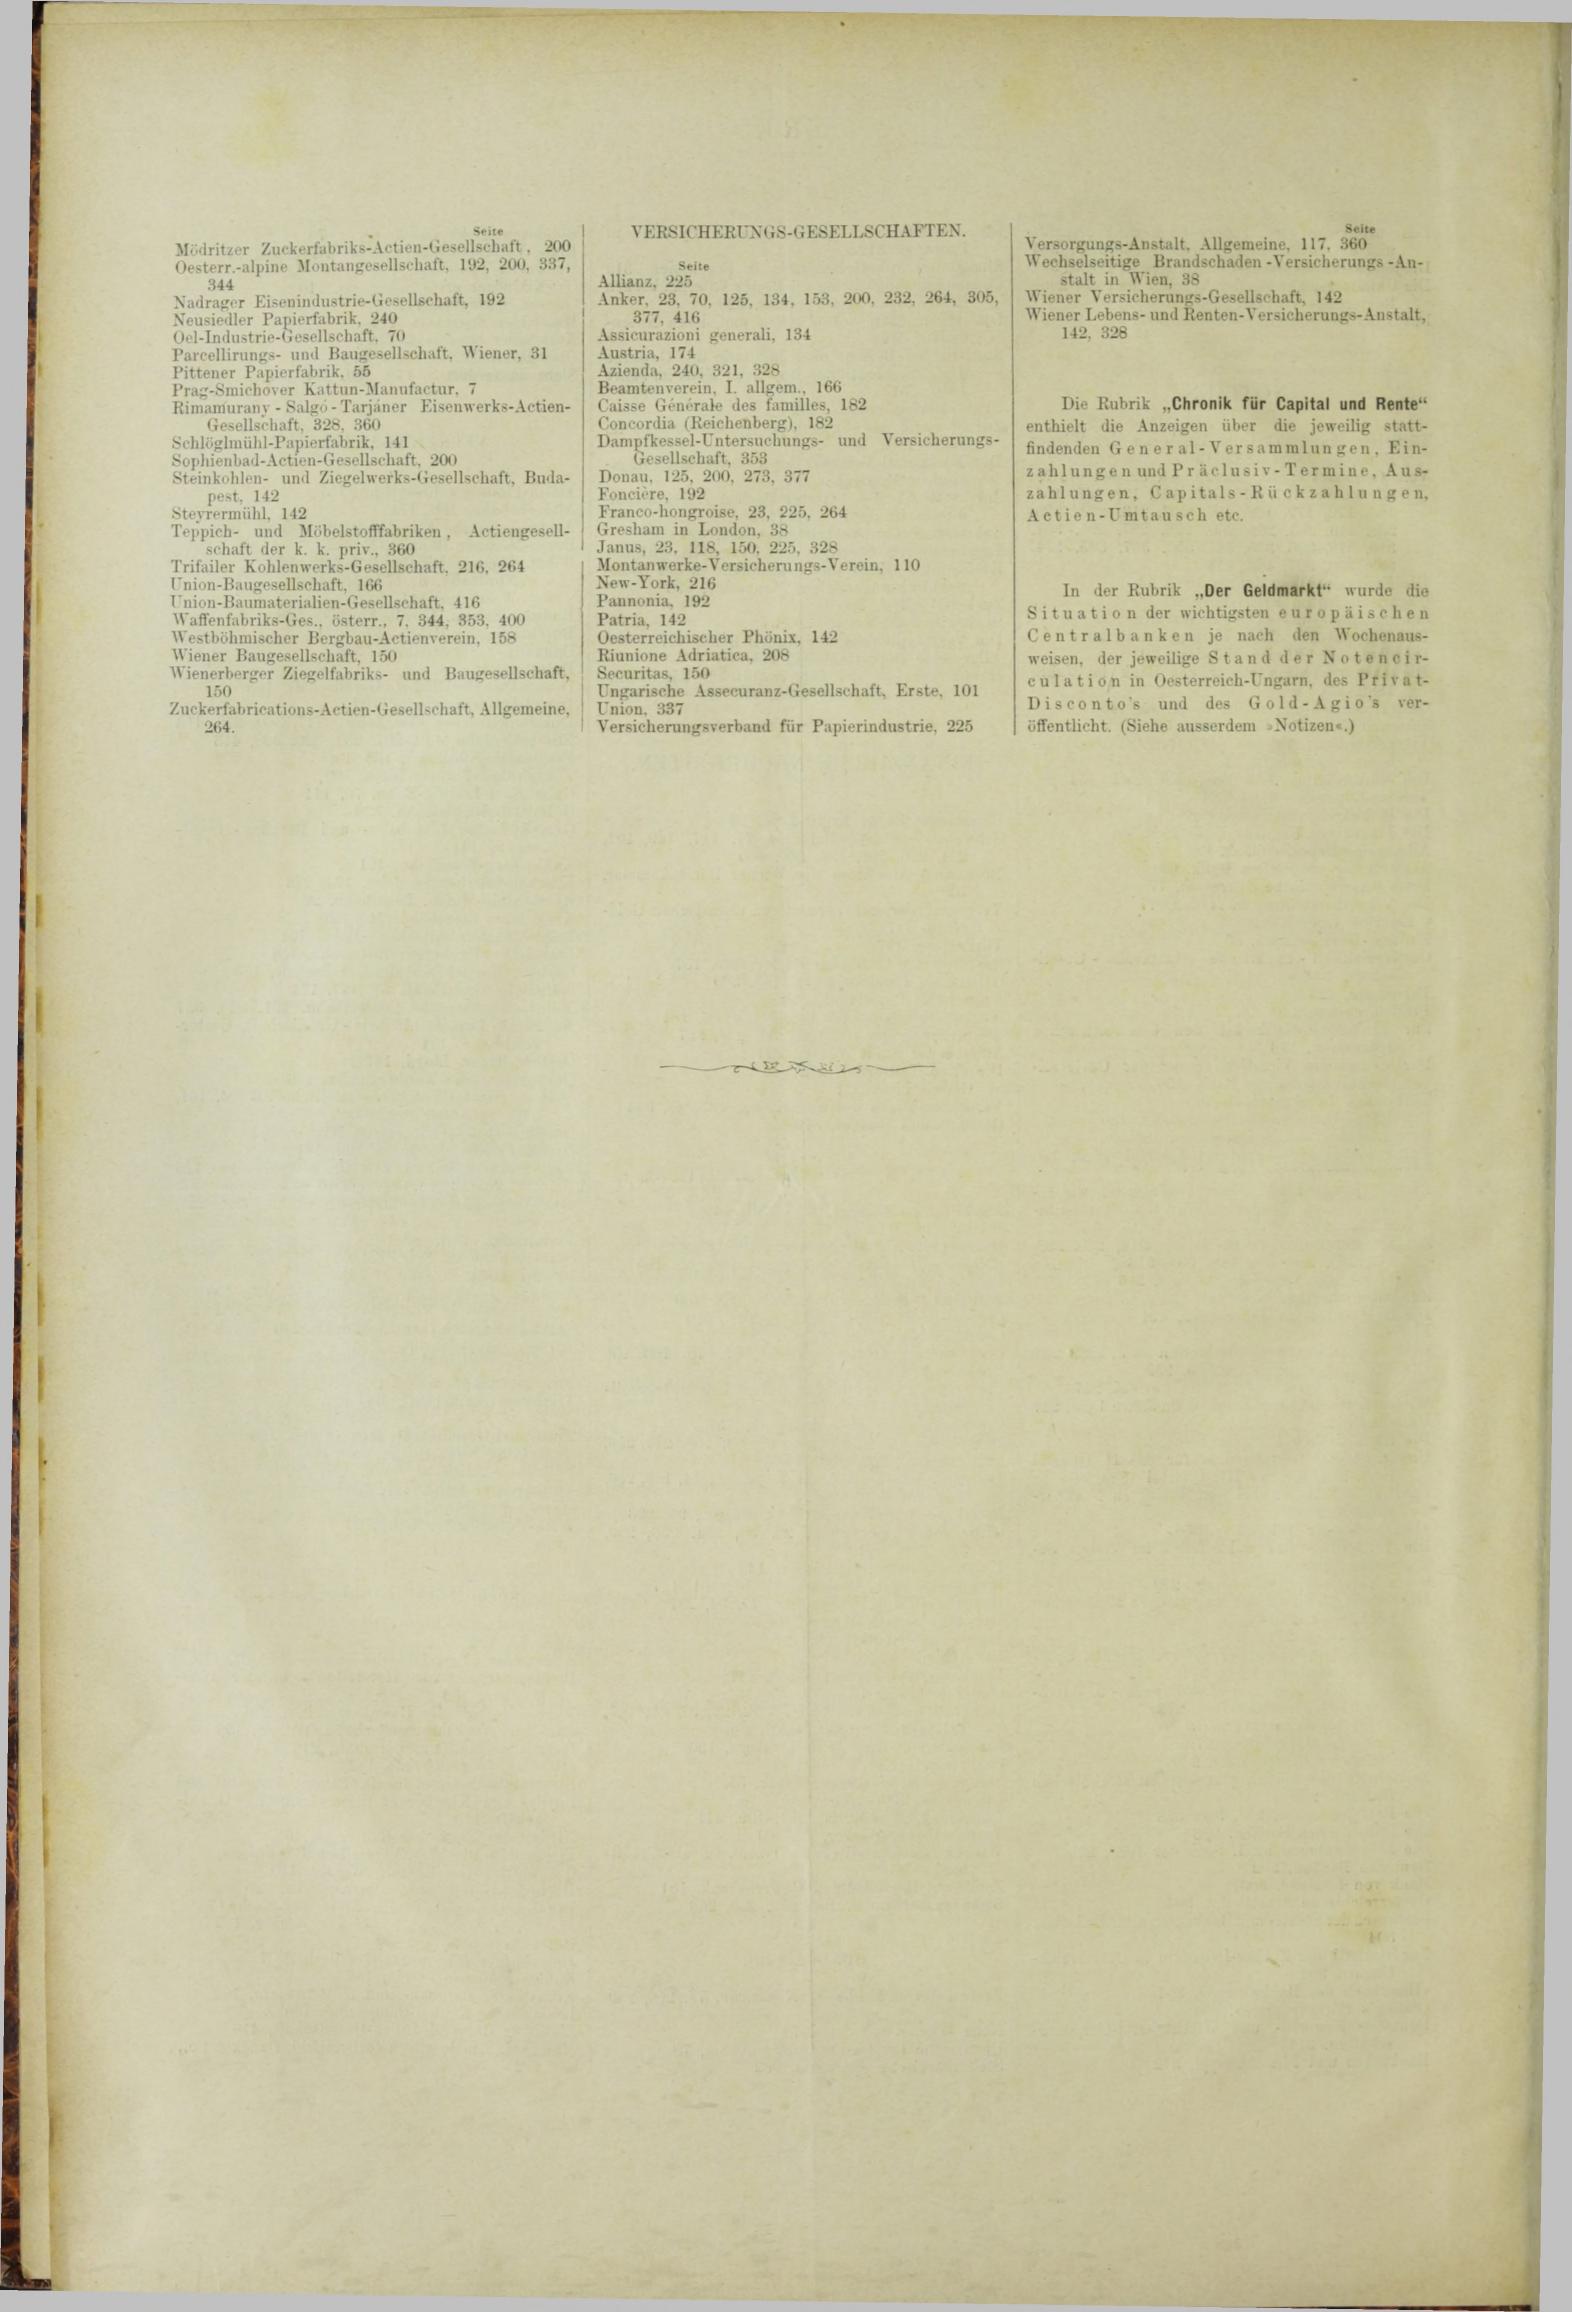 Der Tresor 29.11.1883 - Seite 12